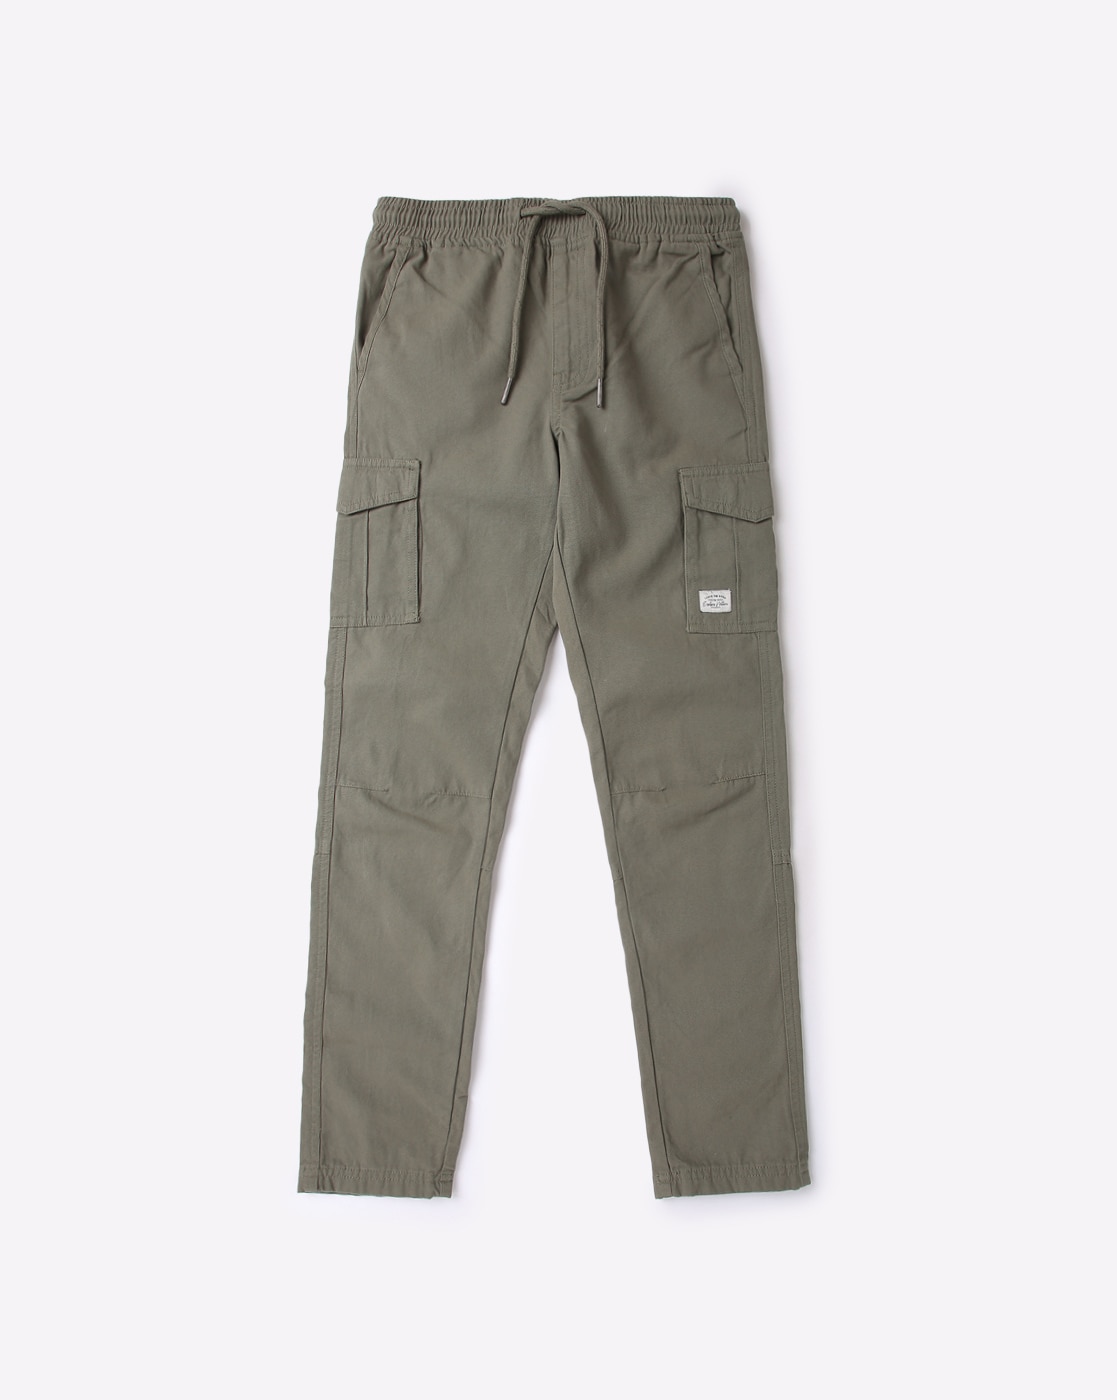 Buy Grey Trousers & Pants for Boys by ZALIO Online | Ajio.com